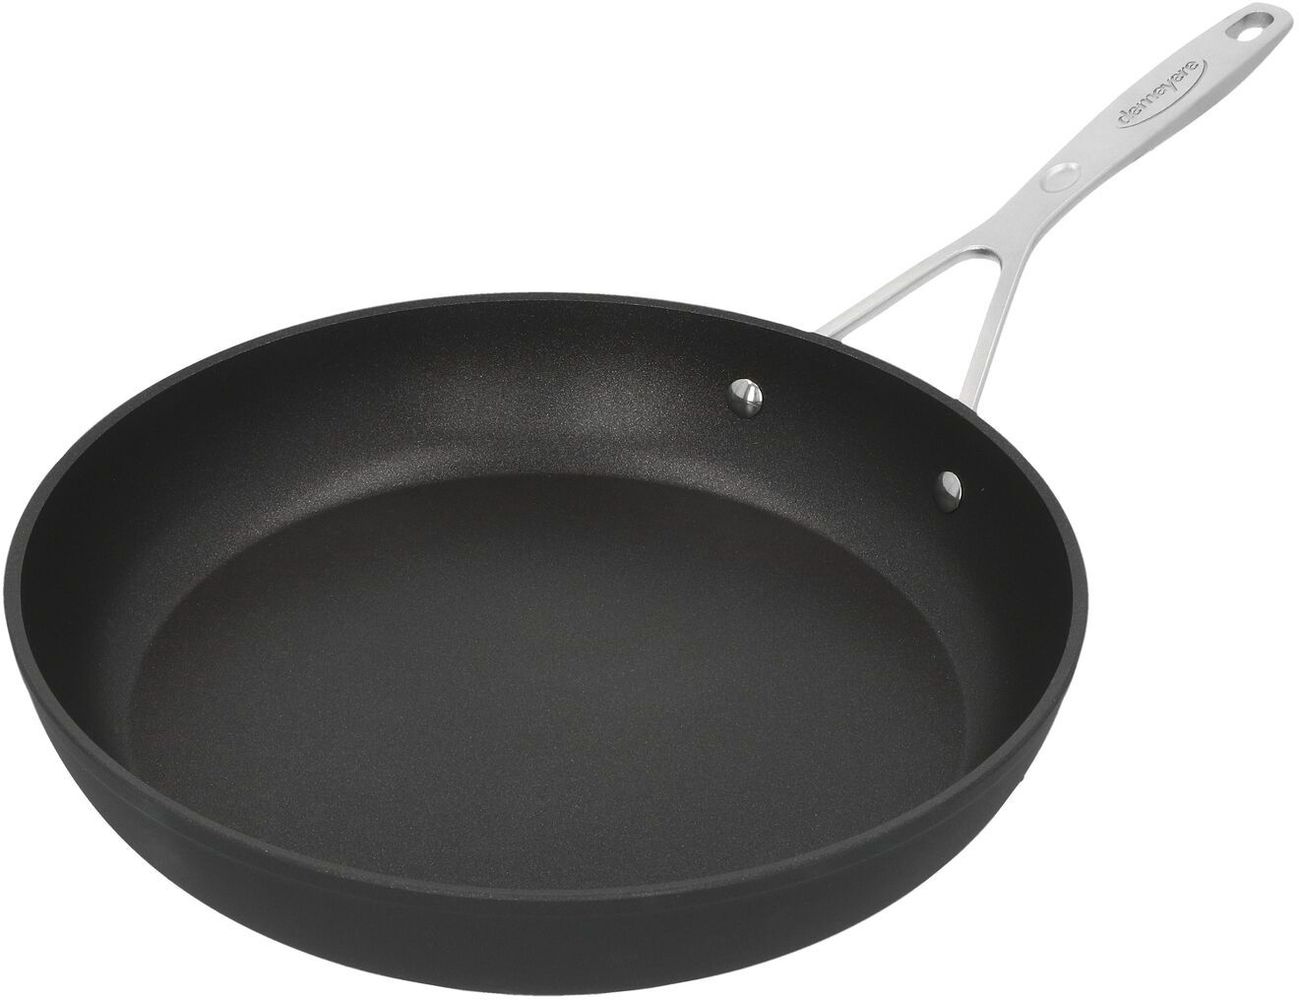 Demeyere Industry 26cm Stainless steel pancake pan